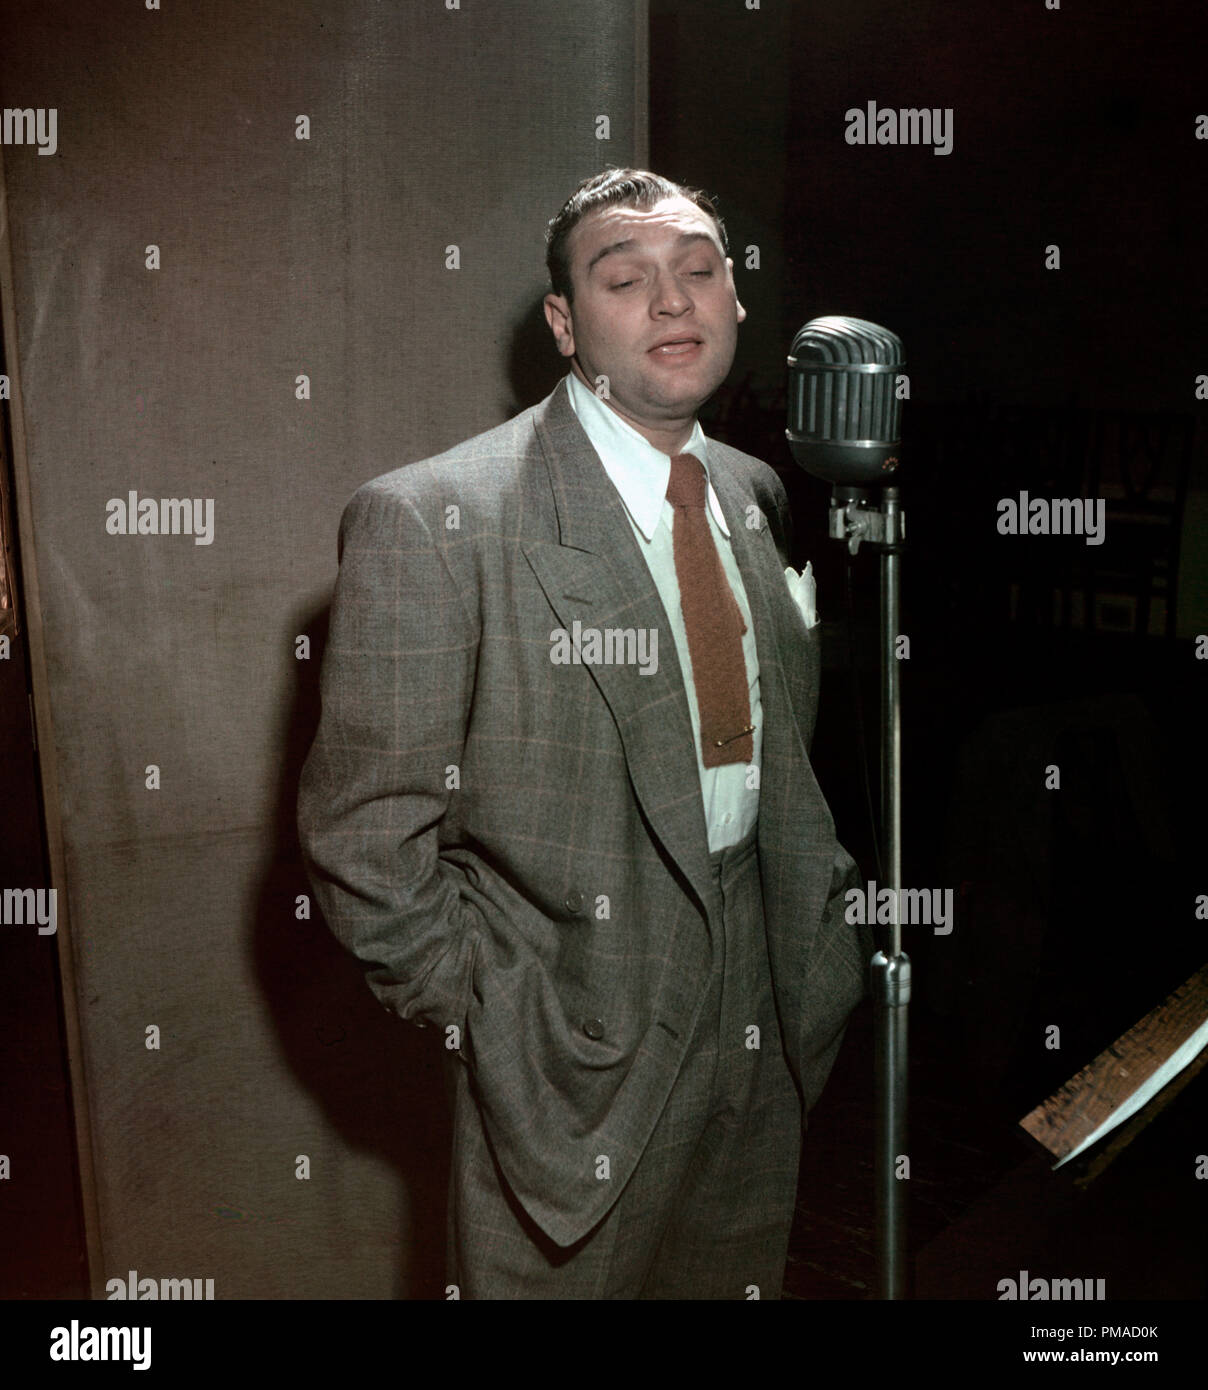 Ritratto di Frankie Laine, New York, N.Y., tra il 1946 e il 1948. Foto di: William P. Gottlieb Riferimento File # 32368 539 THA Foto Stock